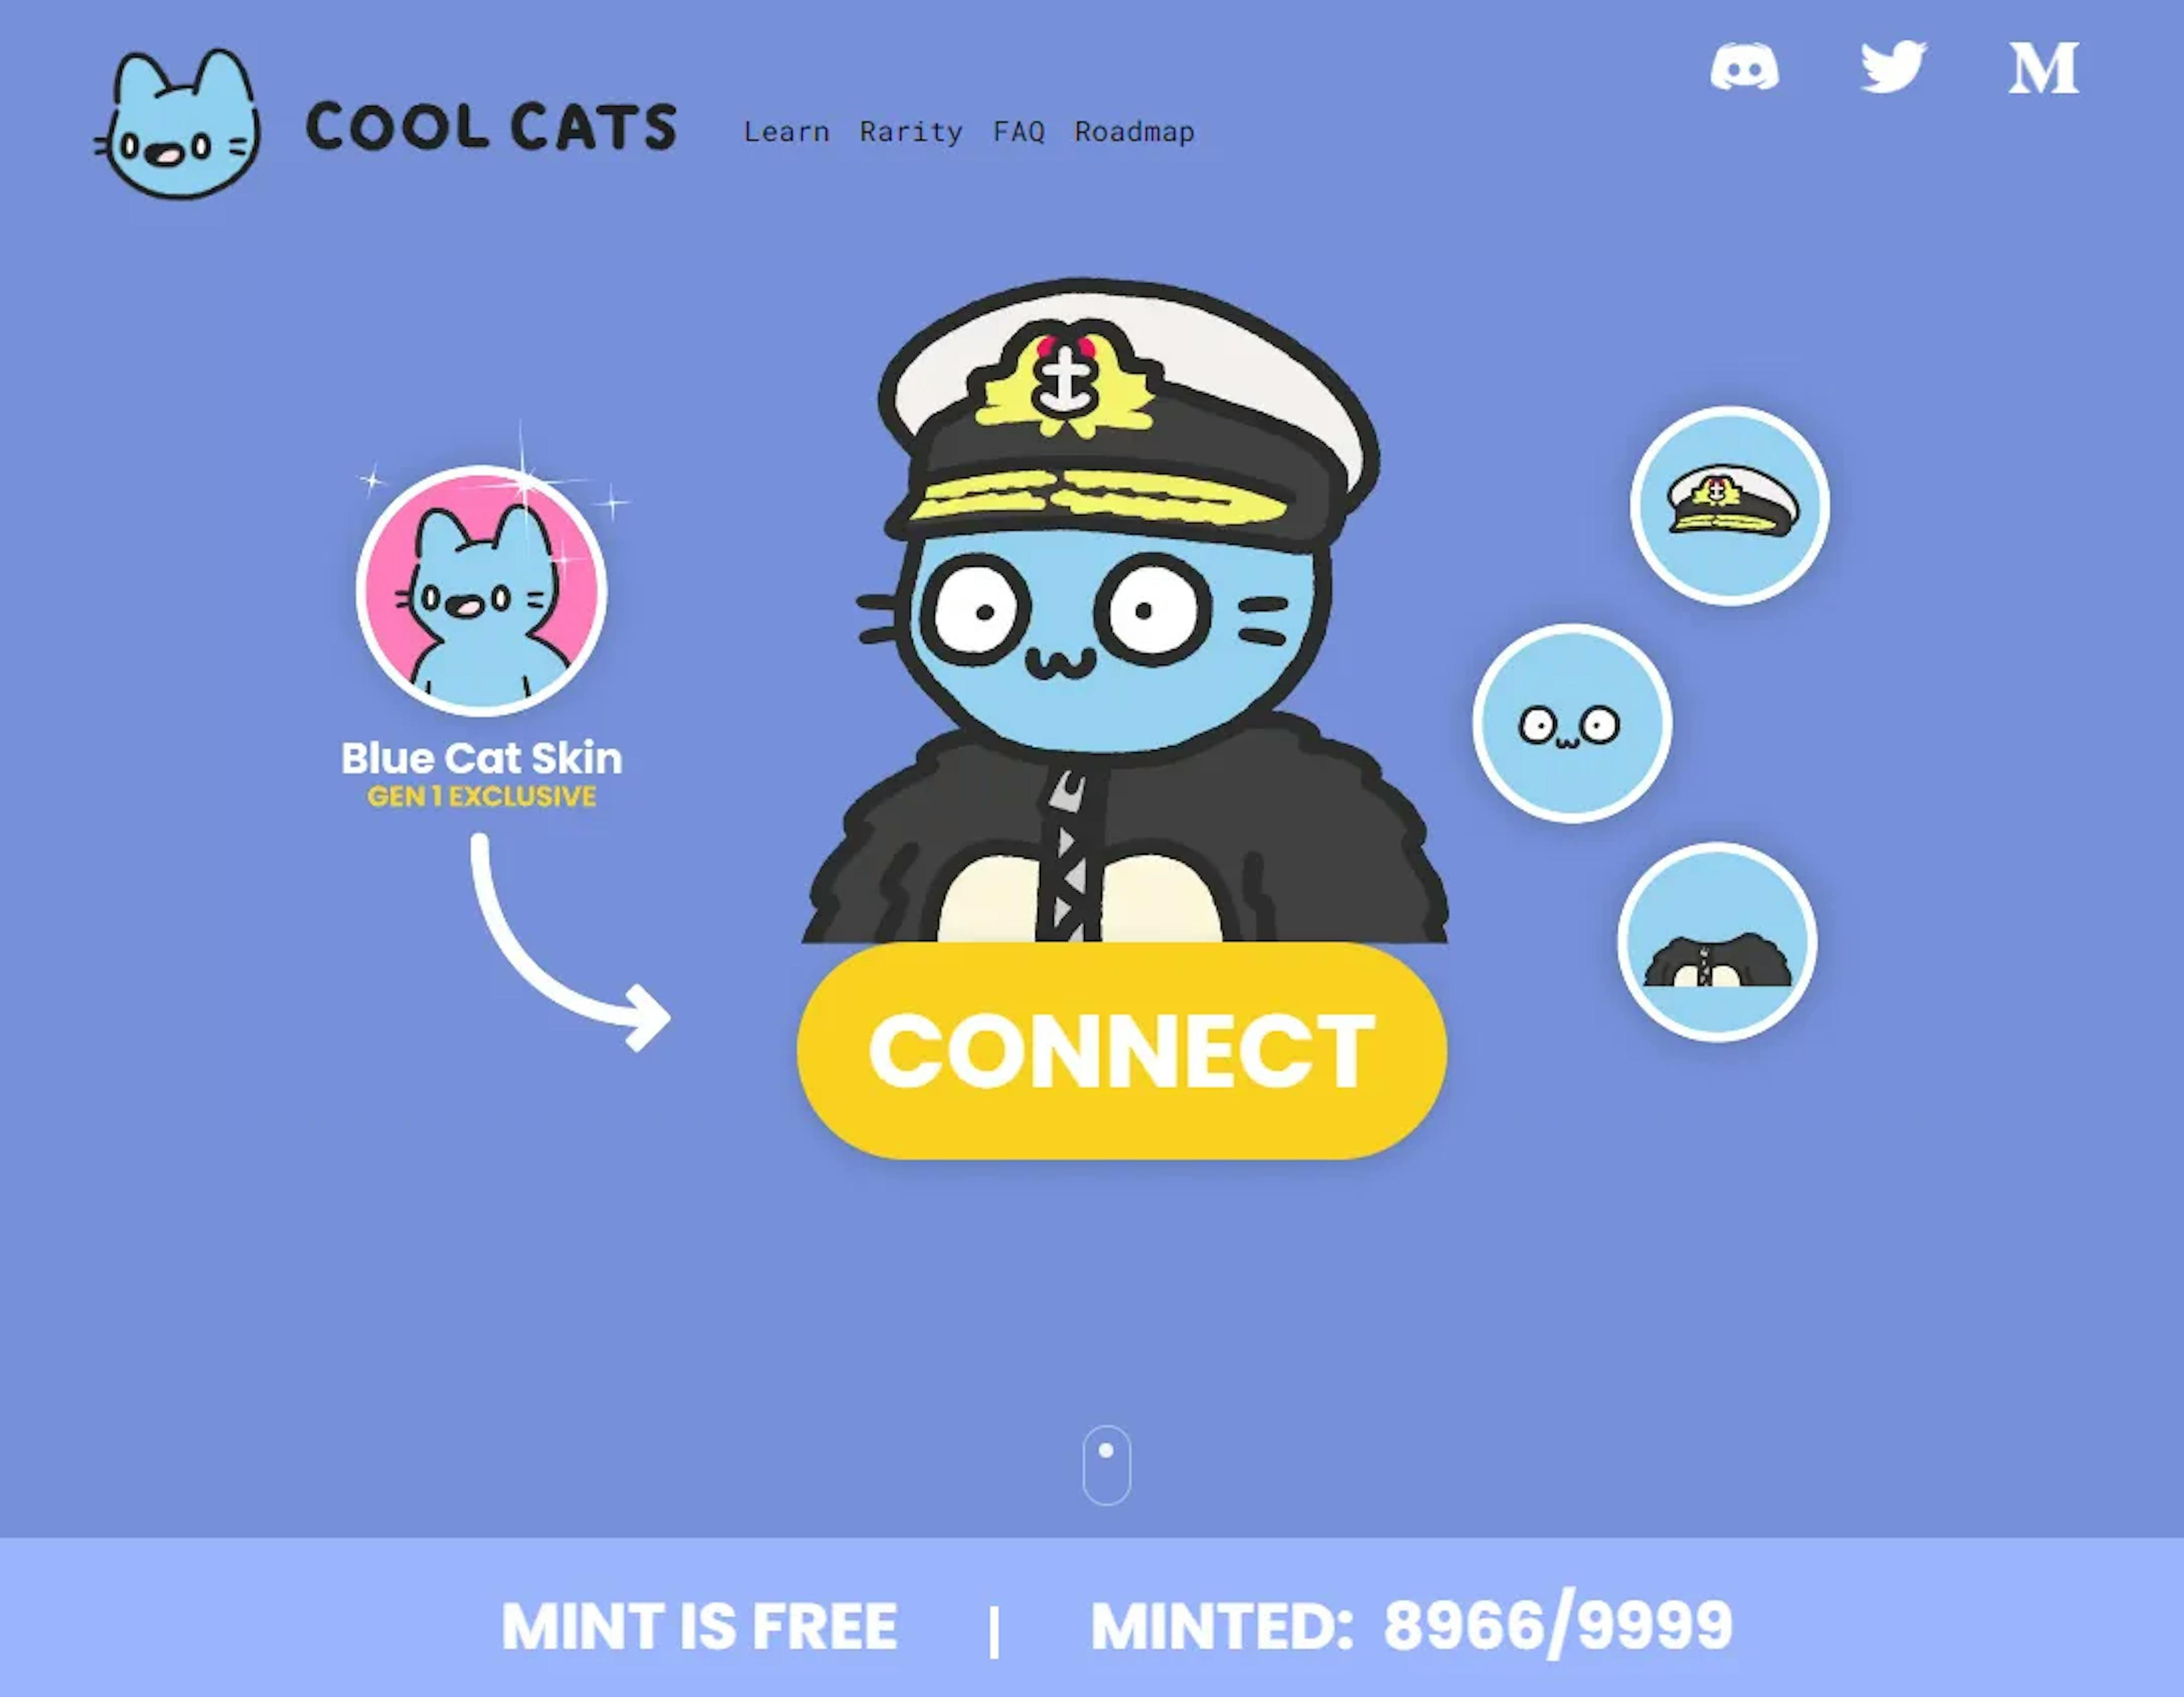 On dirait le site Web de Cool Cats, n'est-ce pas ? Attention, il s'agit en fait d'une capture d'écran d'un véritable site d'escroquerie en cours qui essaie de tromper les gens avec leurs NFT !